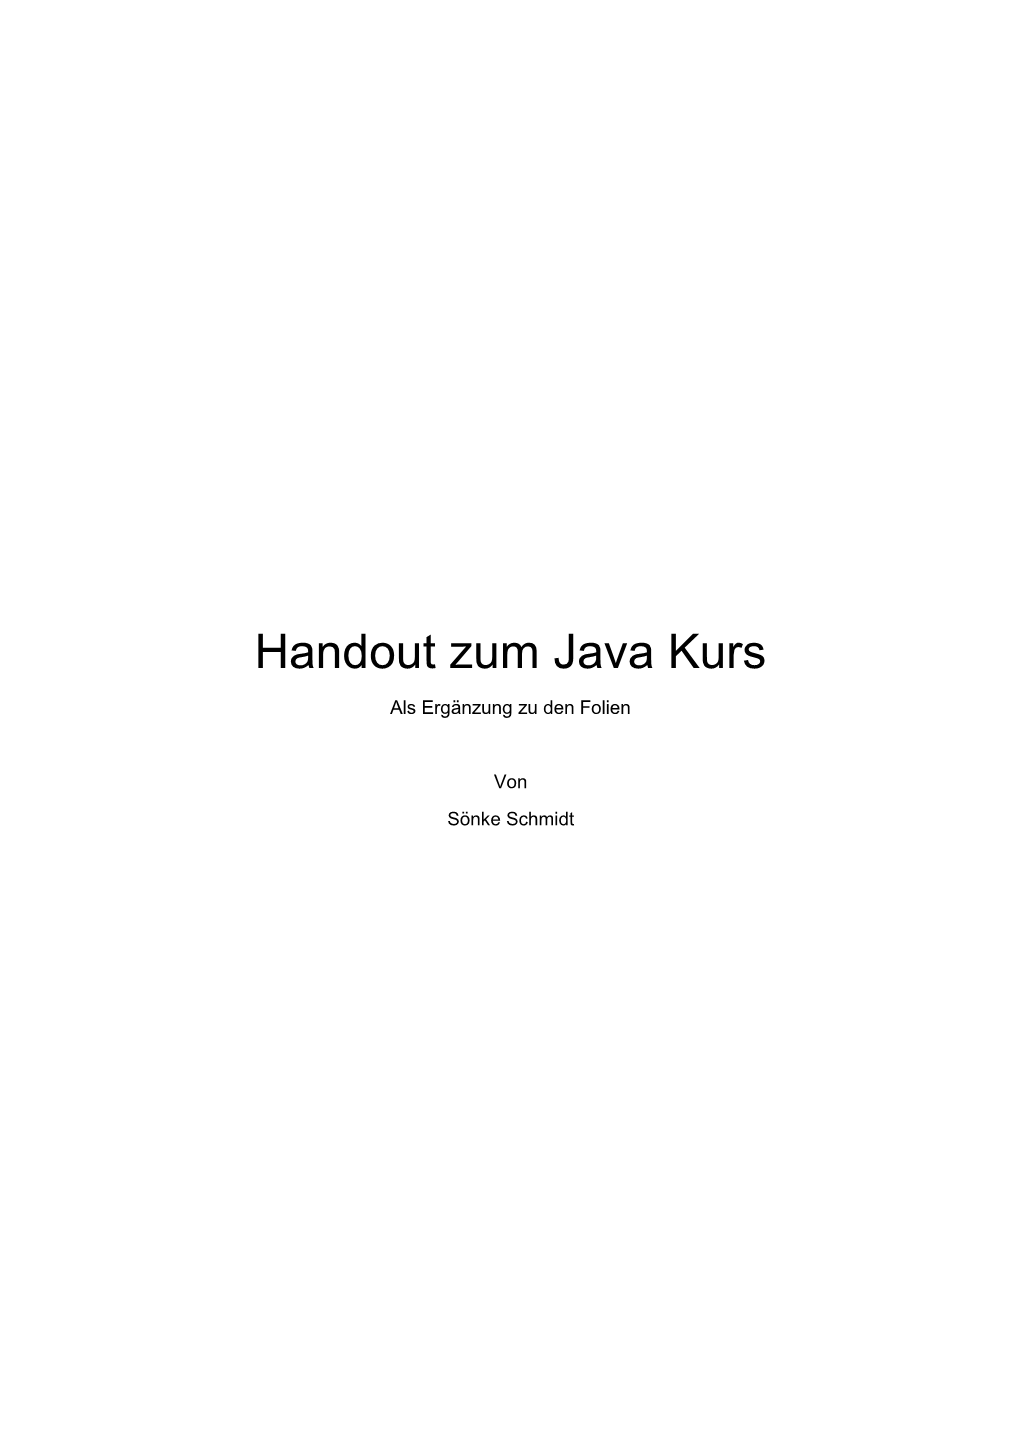 Handout Zum Java Kurs